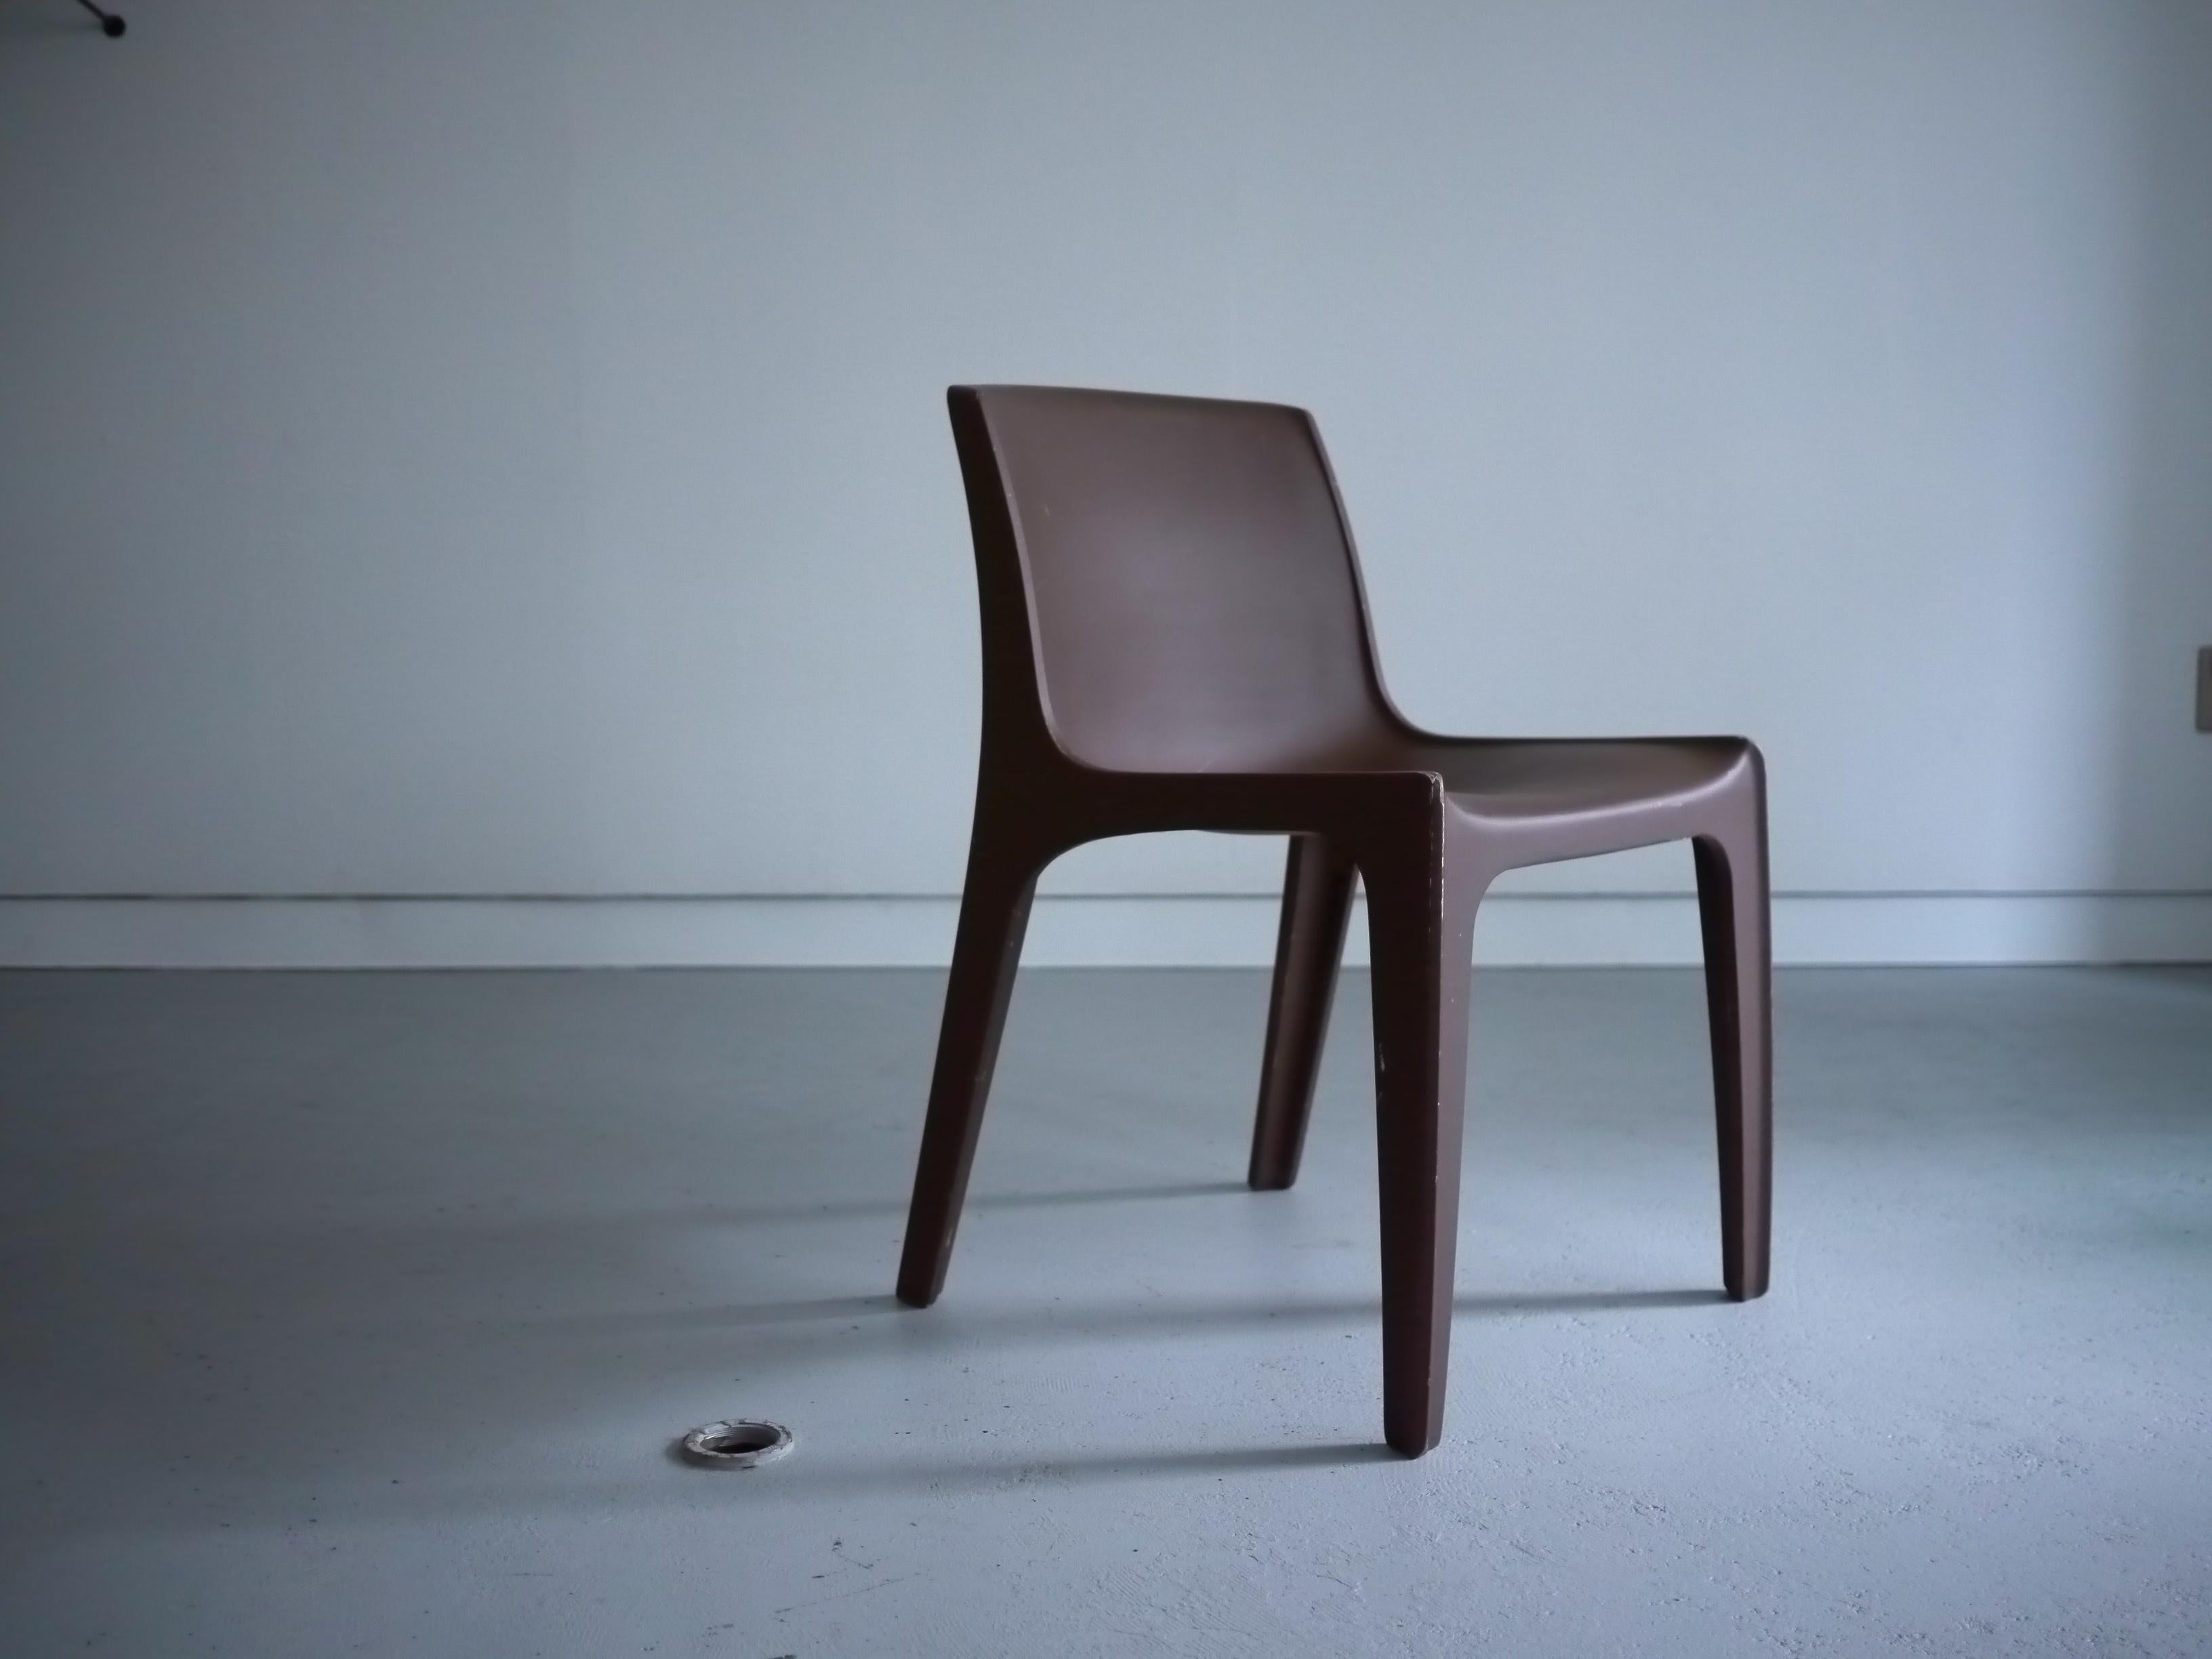 Dieser Stuhl für den Innen- und Außenbereich wurde in den 1970er Jahren von dem westdeutschen Möbelhersteller Horn eingeführt. Der Stuhl besteht aus dem vom Unternehmen entwickelten Material Polyurethan Duromar, das sehr leicht ist. 

Die